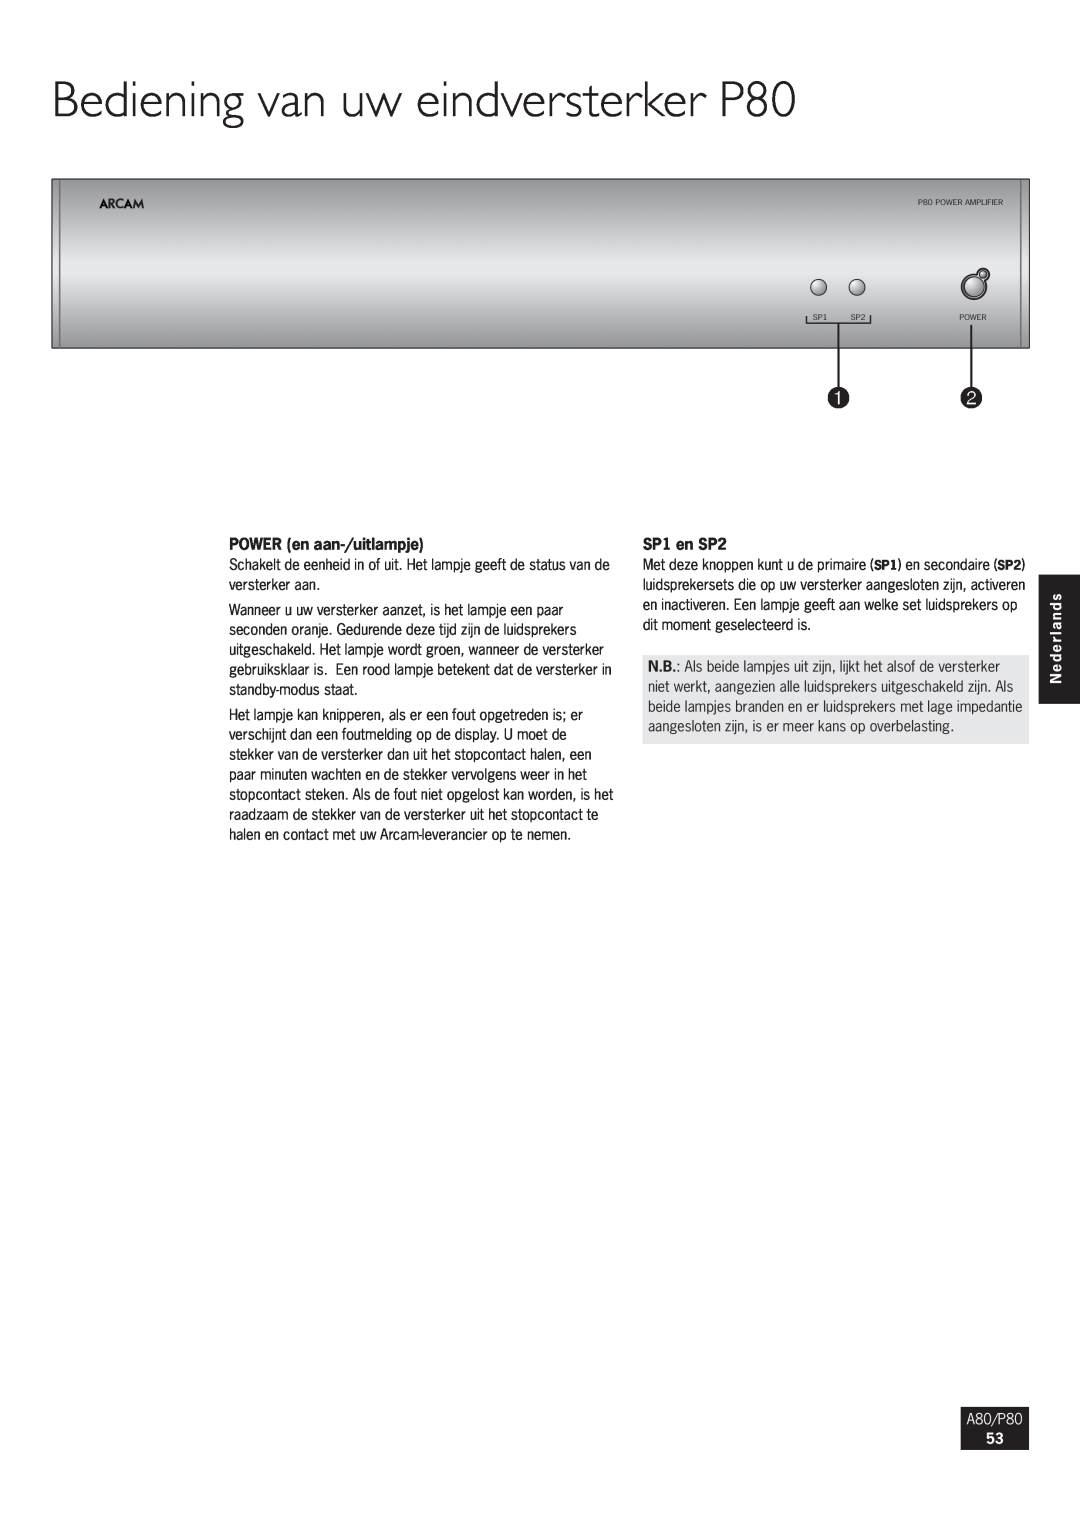 Arcam manual Bediening van uw eindversterker P80, POWER en aan-/uitlampje, SP1 en SP2, Nederlands, A80/P80 